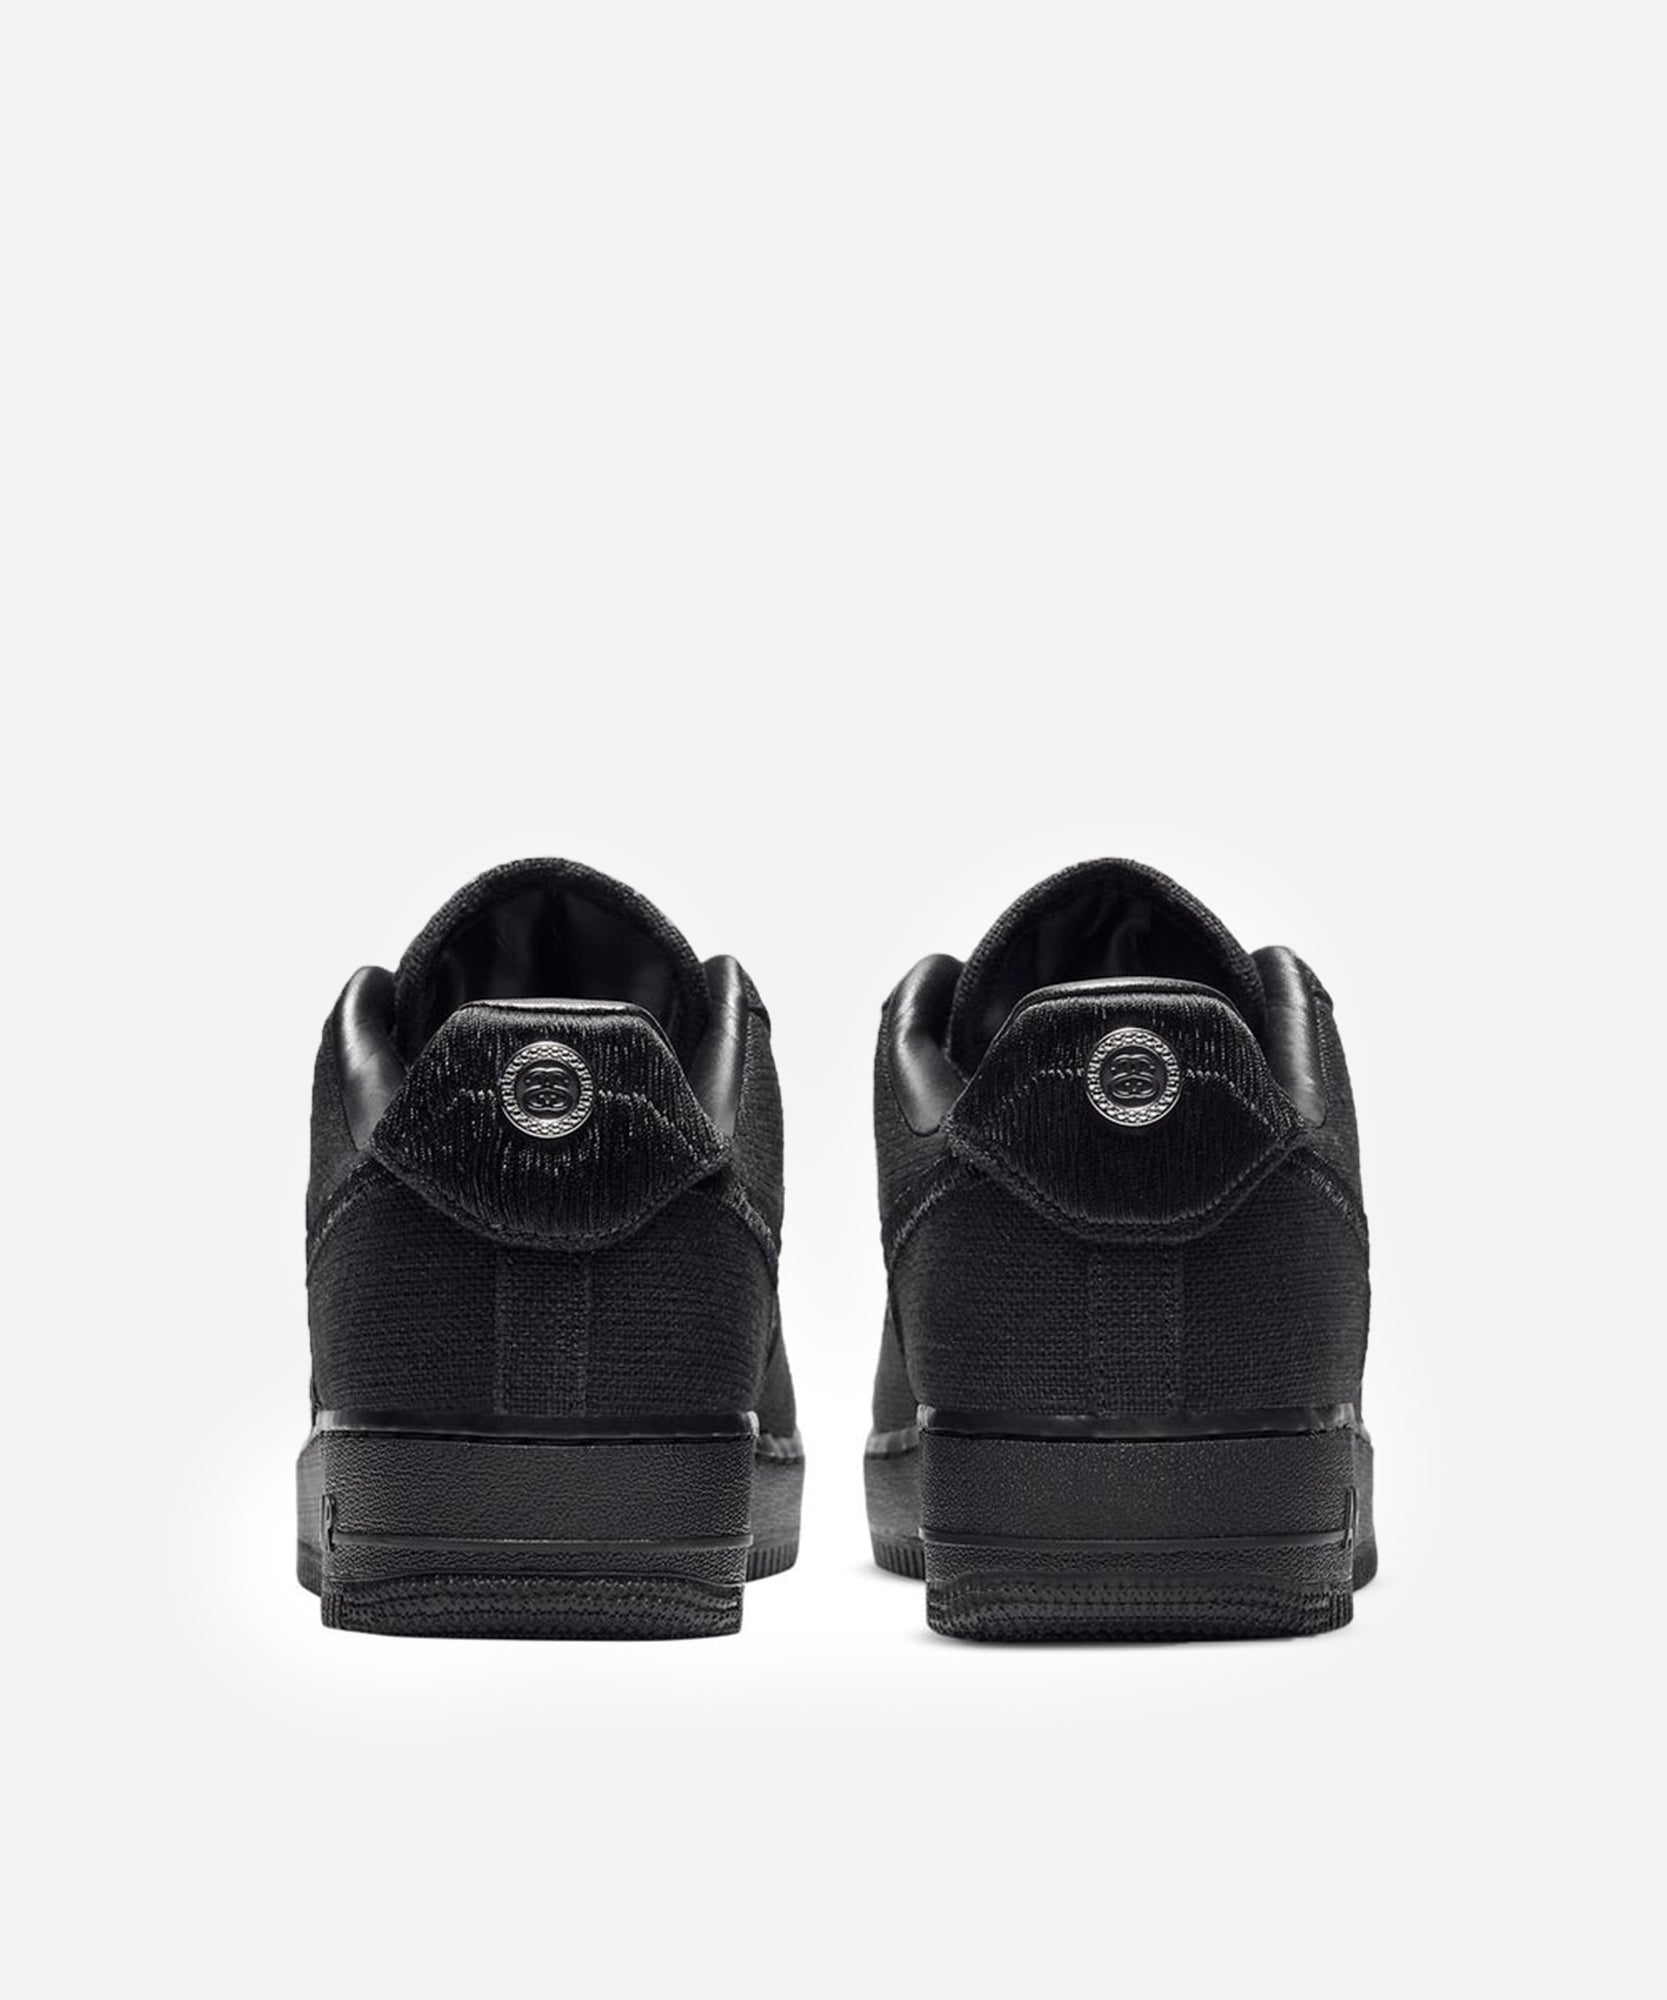 Nike x Stüssy Air Force 1 Low (Black/Black) – Patta